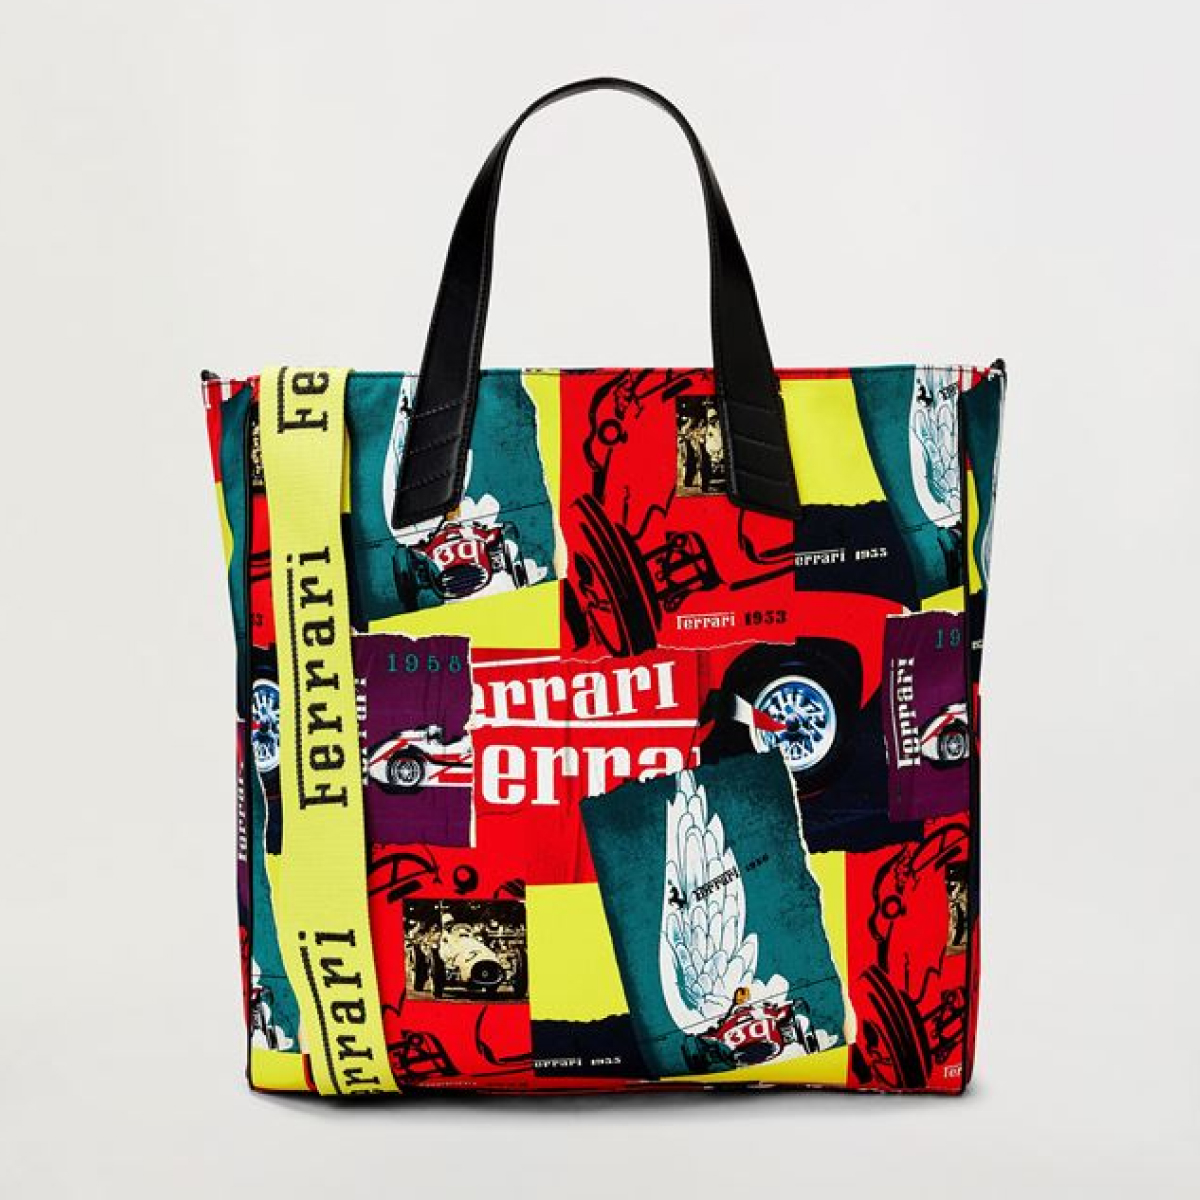 Printed canvas shopper bag